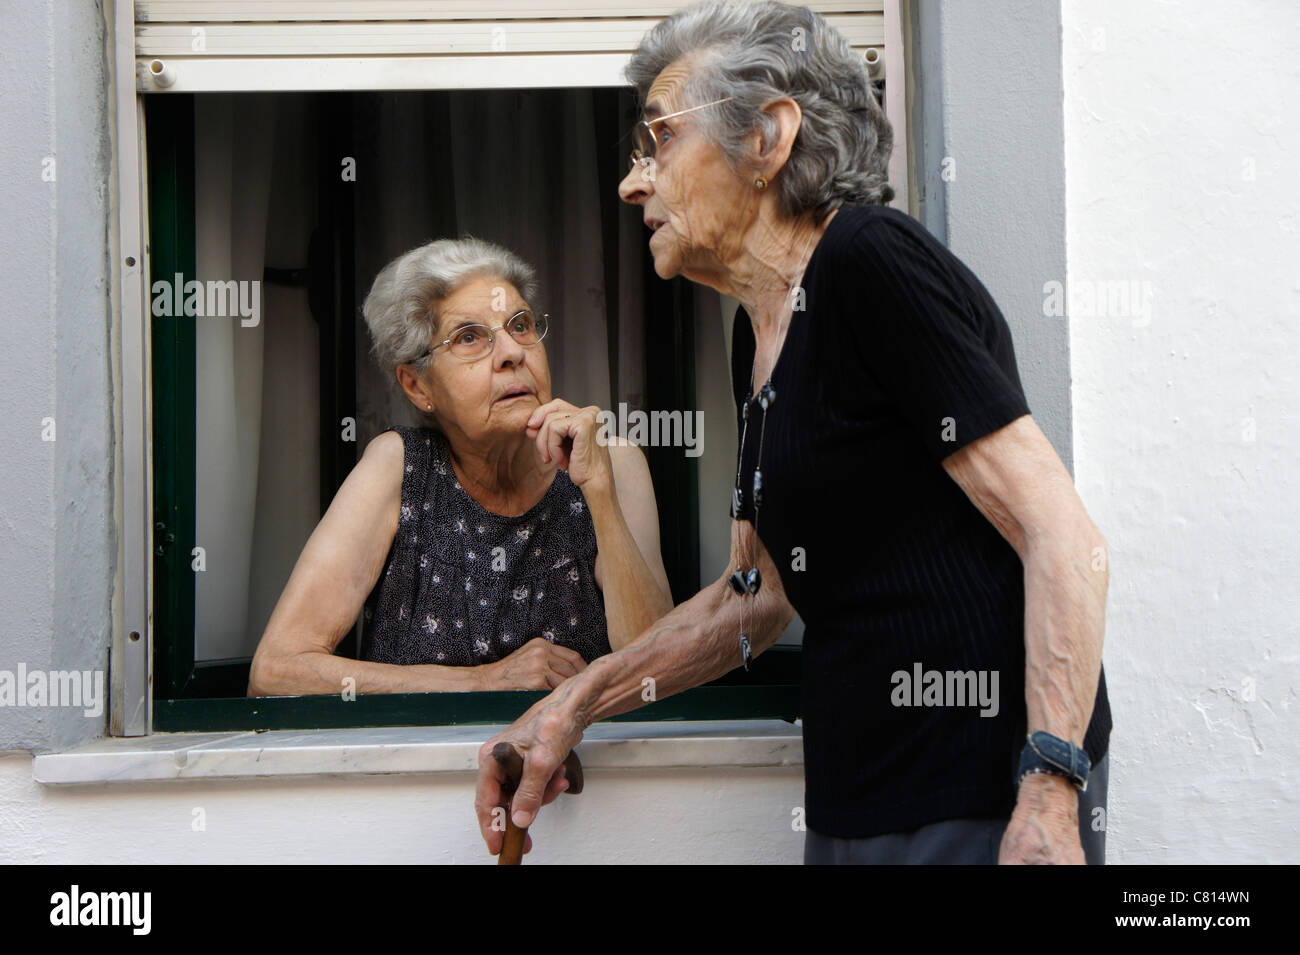 Two elderly women talking gossip Stock Photo